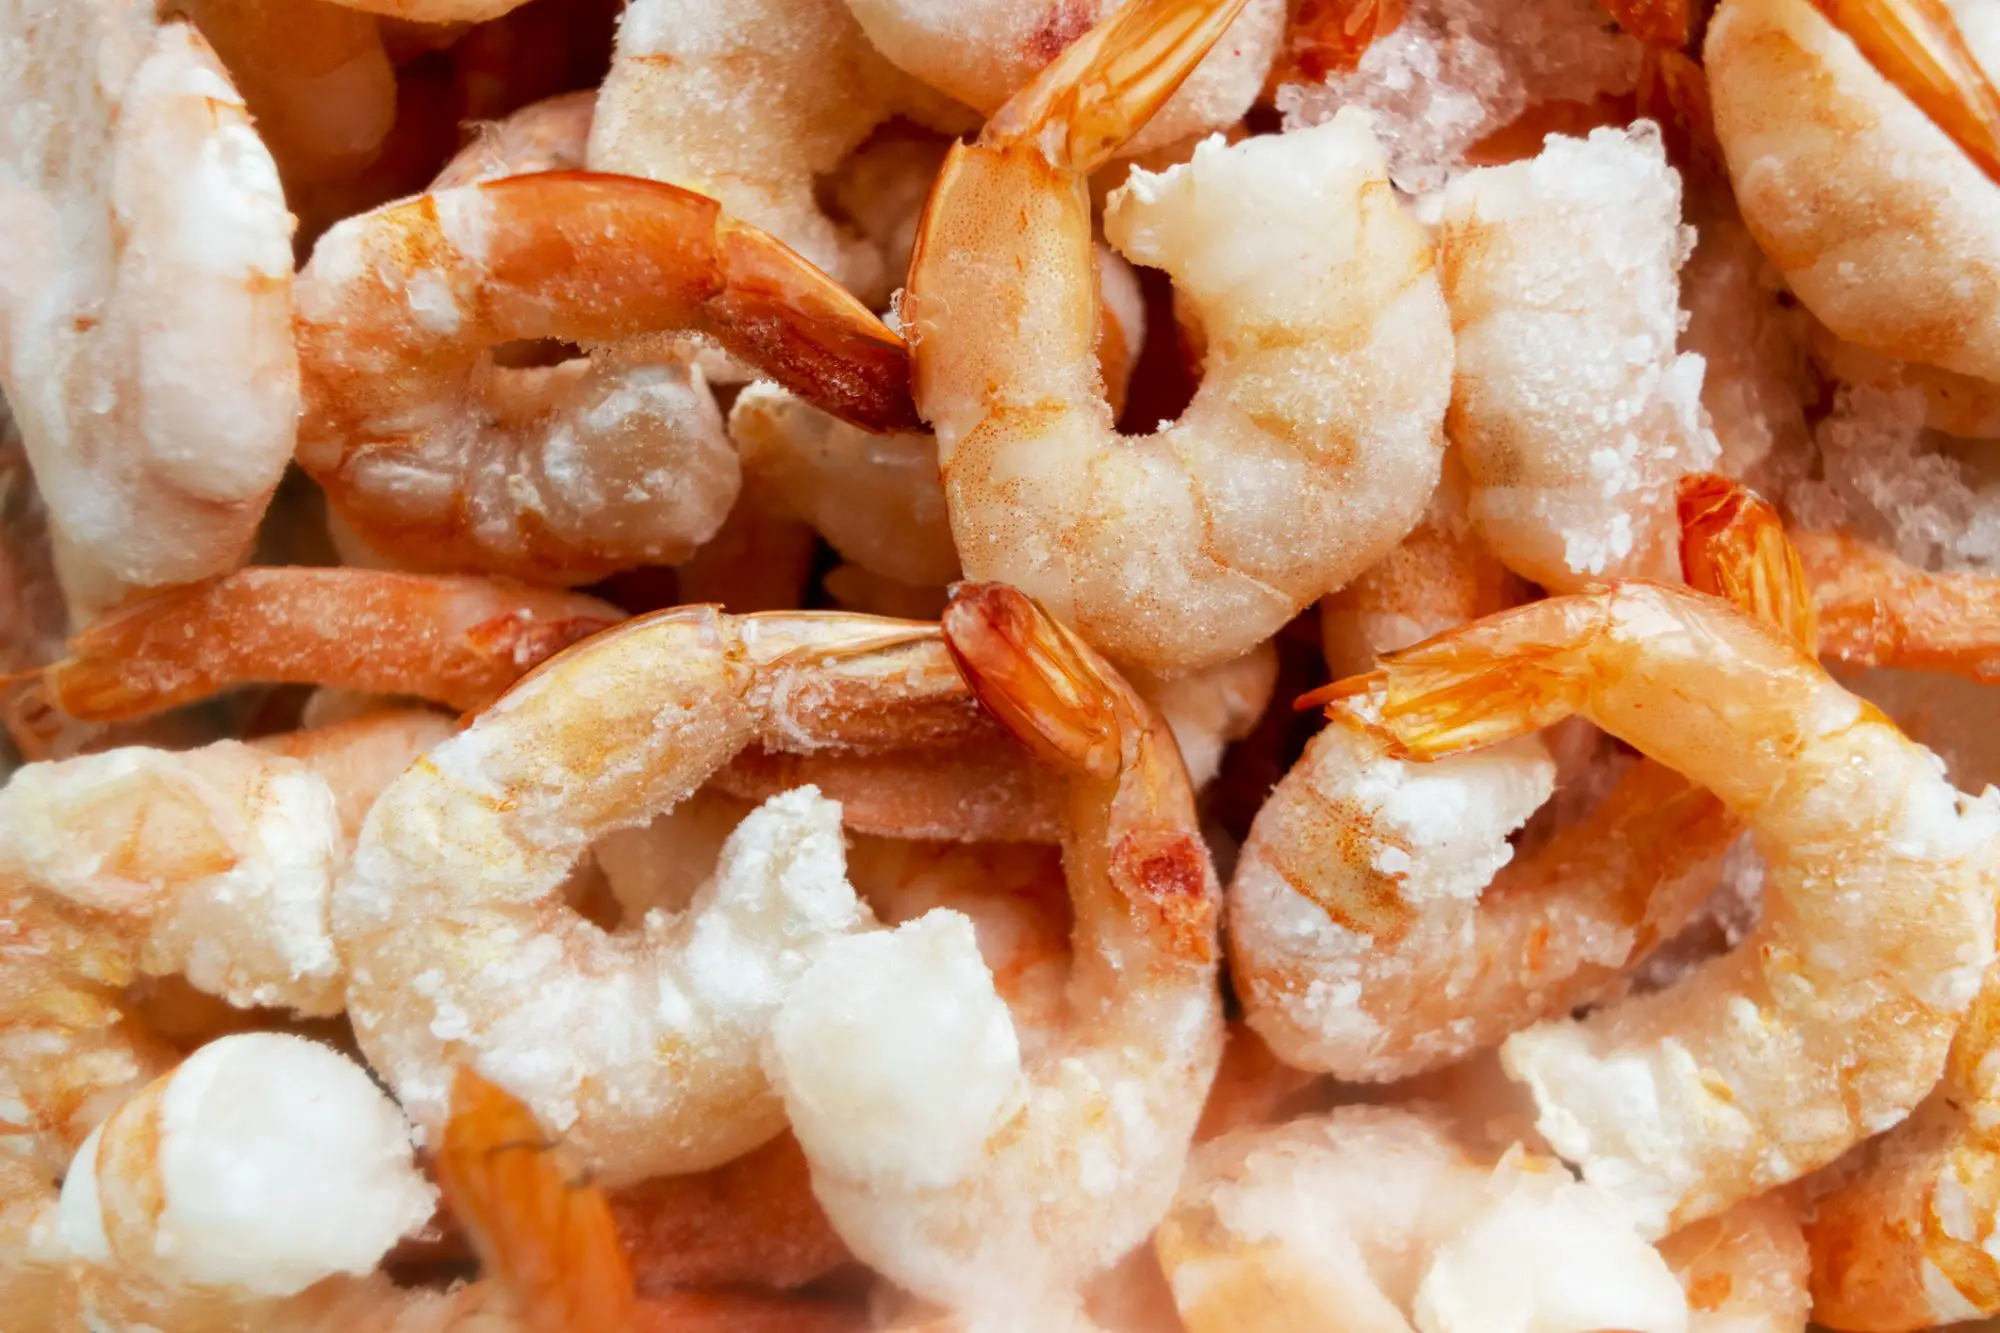 how long is shrimp good for in the fridge